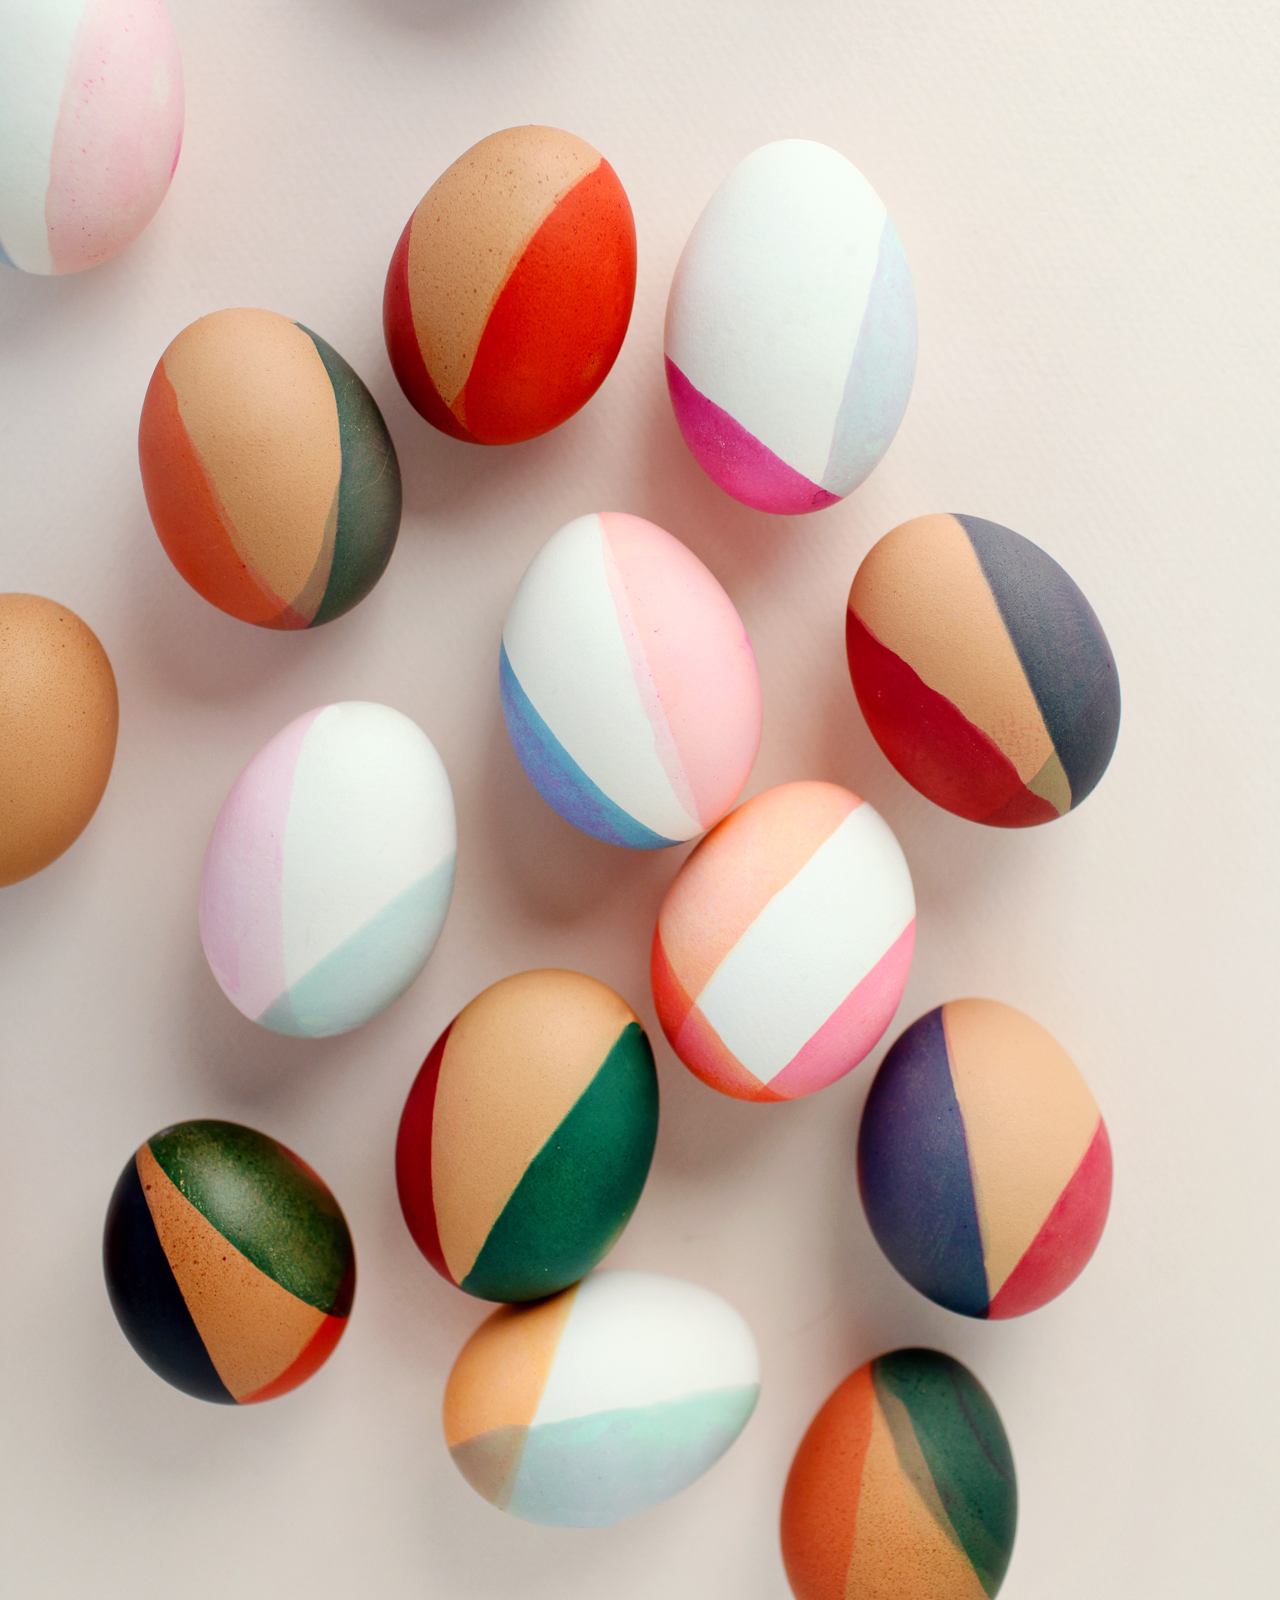 Я знал, что эти цветовые сочетания будут красивым и неожиданным применением на пасхальных яйцах, особенно с современной обработкой красителем с блокировкой цвета